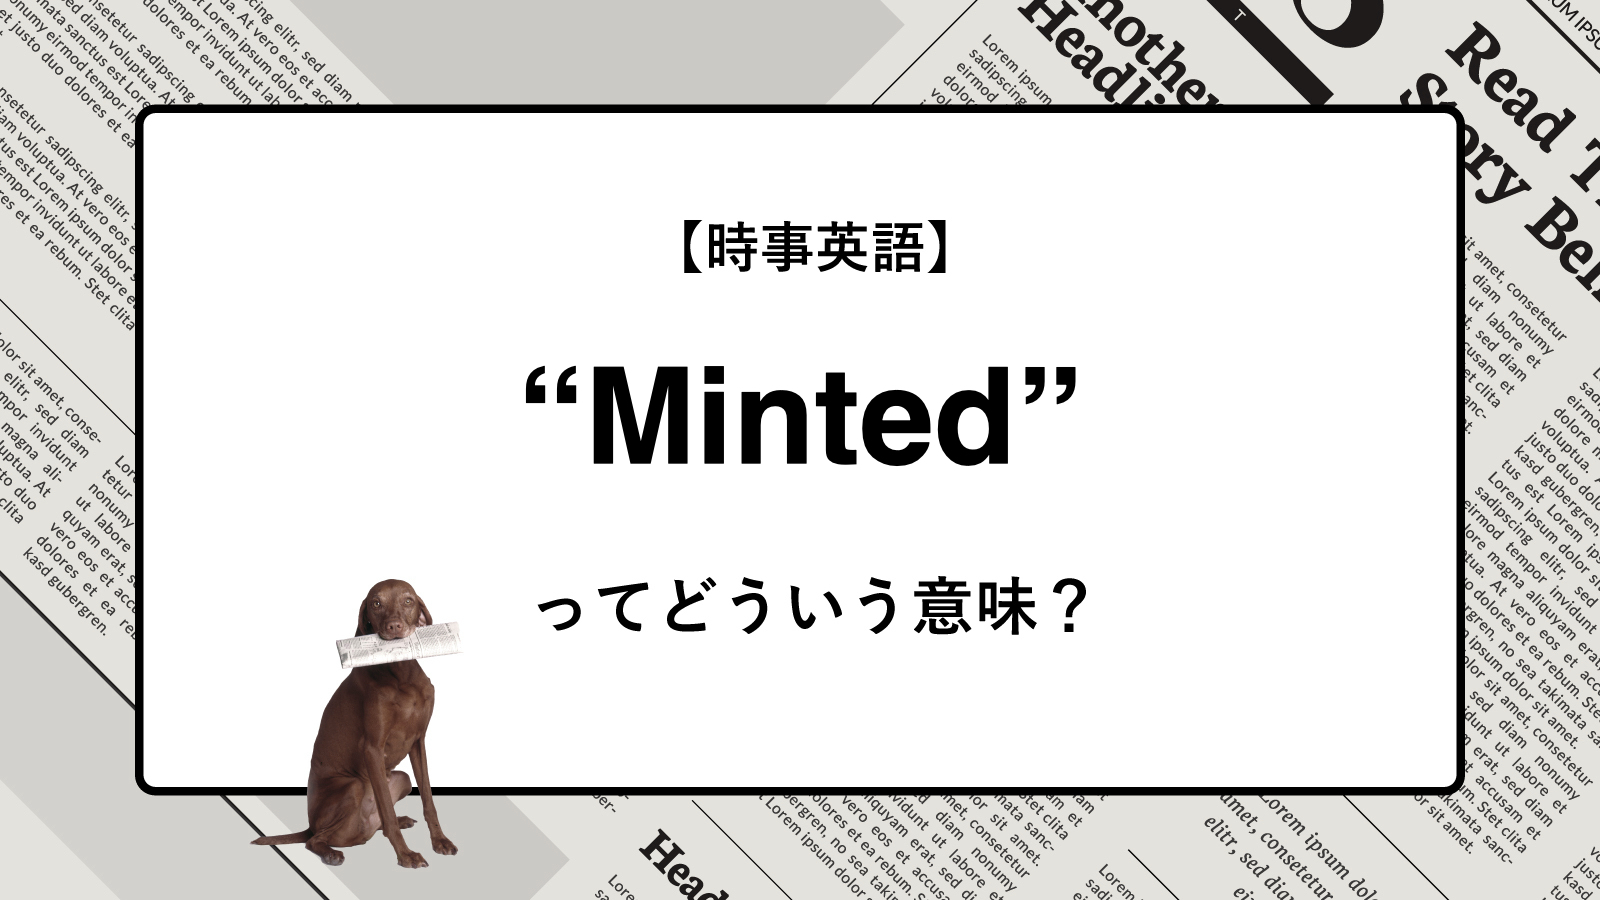 【時事英語】“Minted” ってどういう意味？ | ニュースの「キーワード」で語彙力を身につける